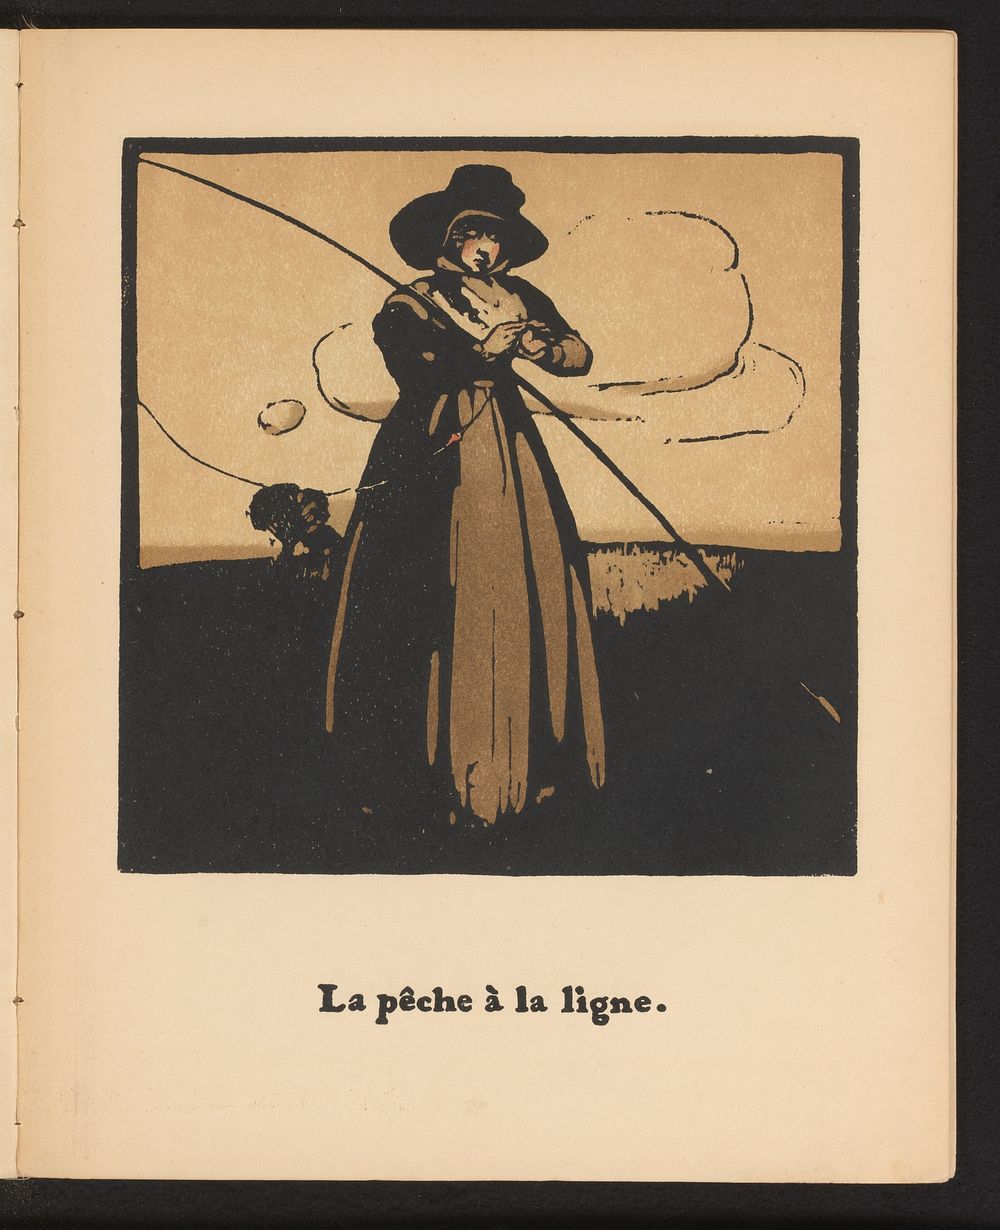 Vrouw met vislijn (1898) by William Nicholson and Société Française d éditions d art